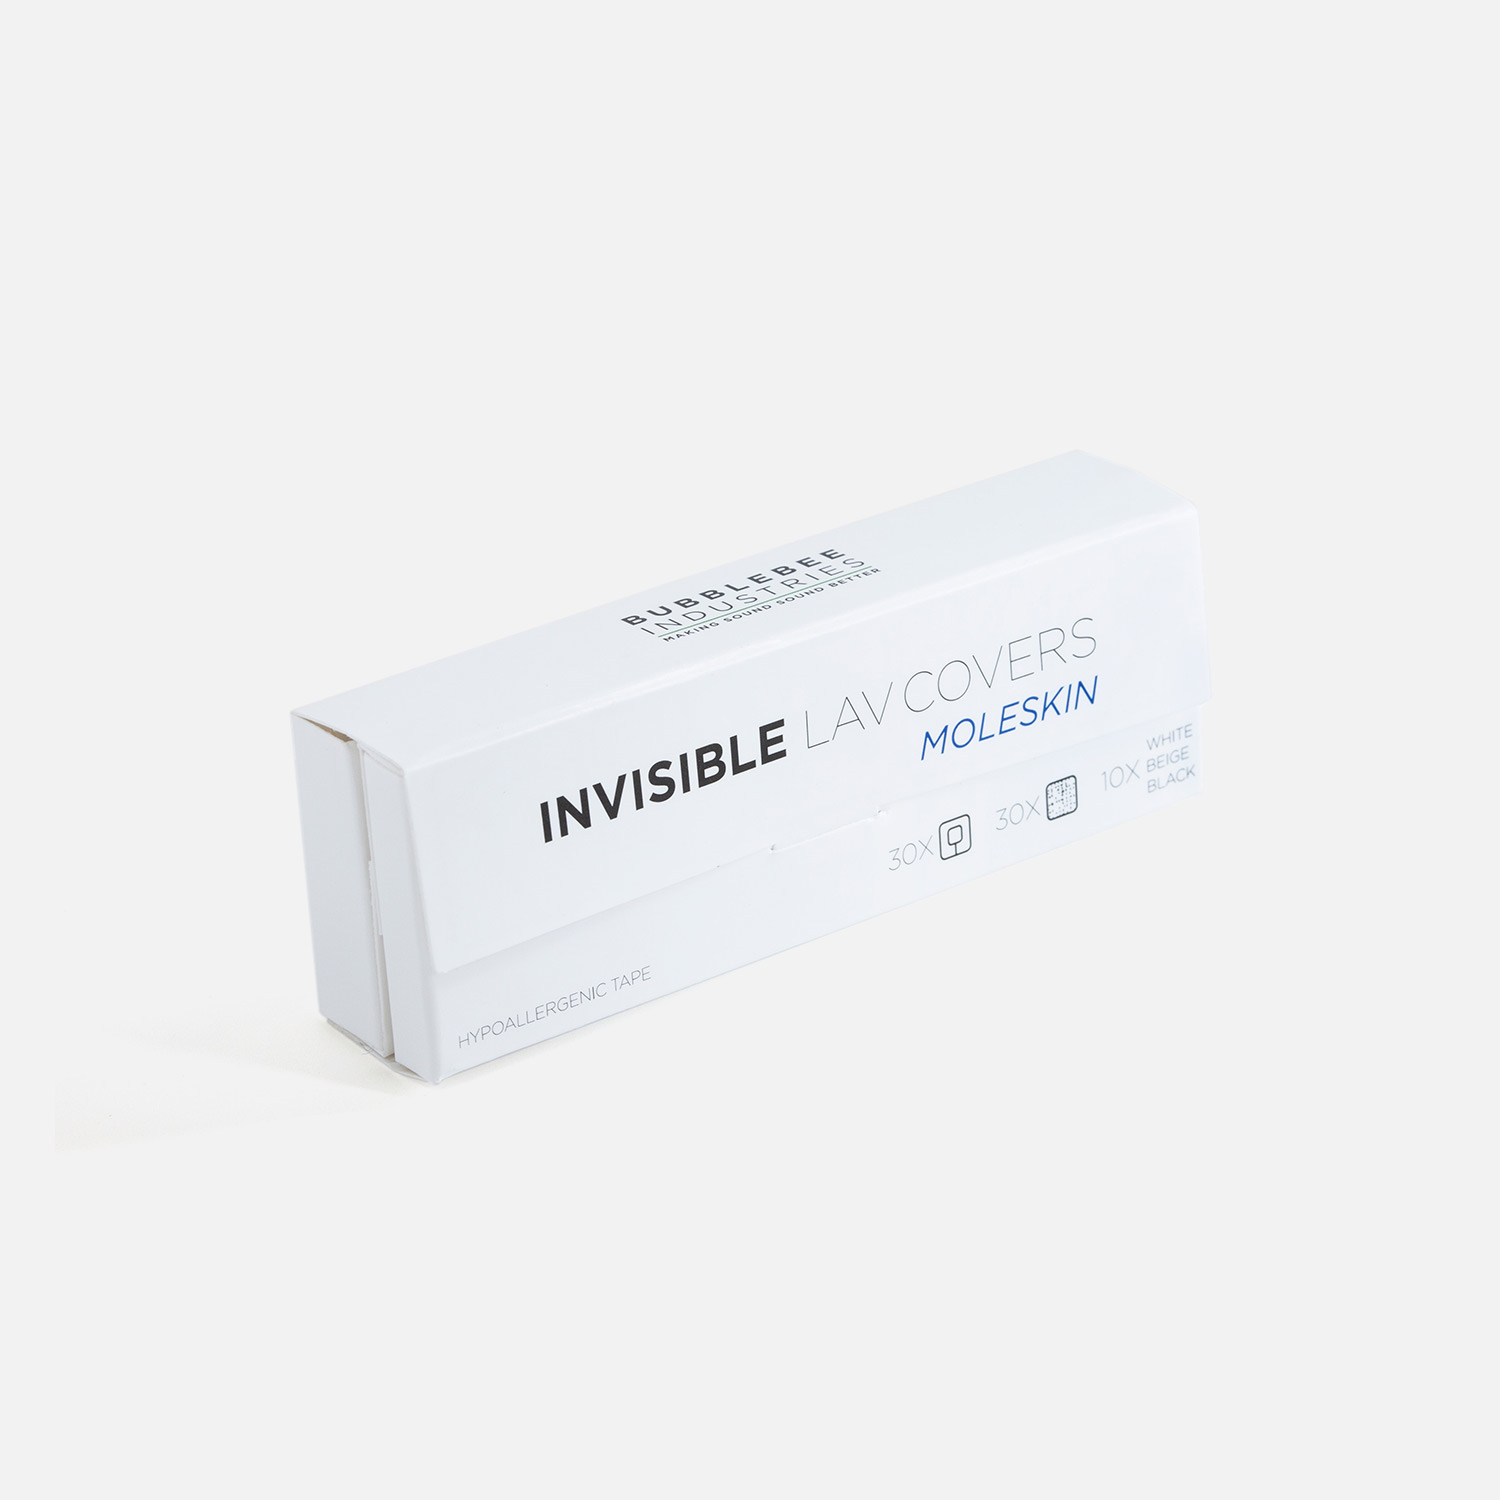 Bubblebee Invisible Lav Cover